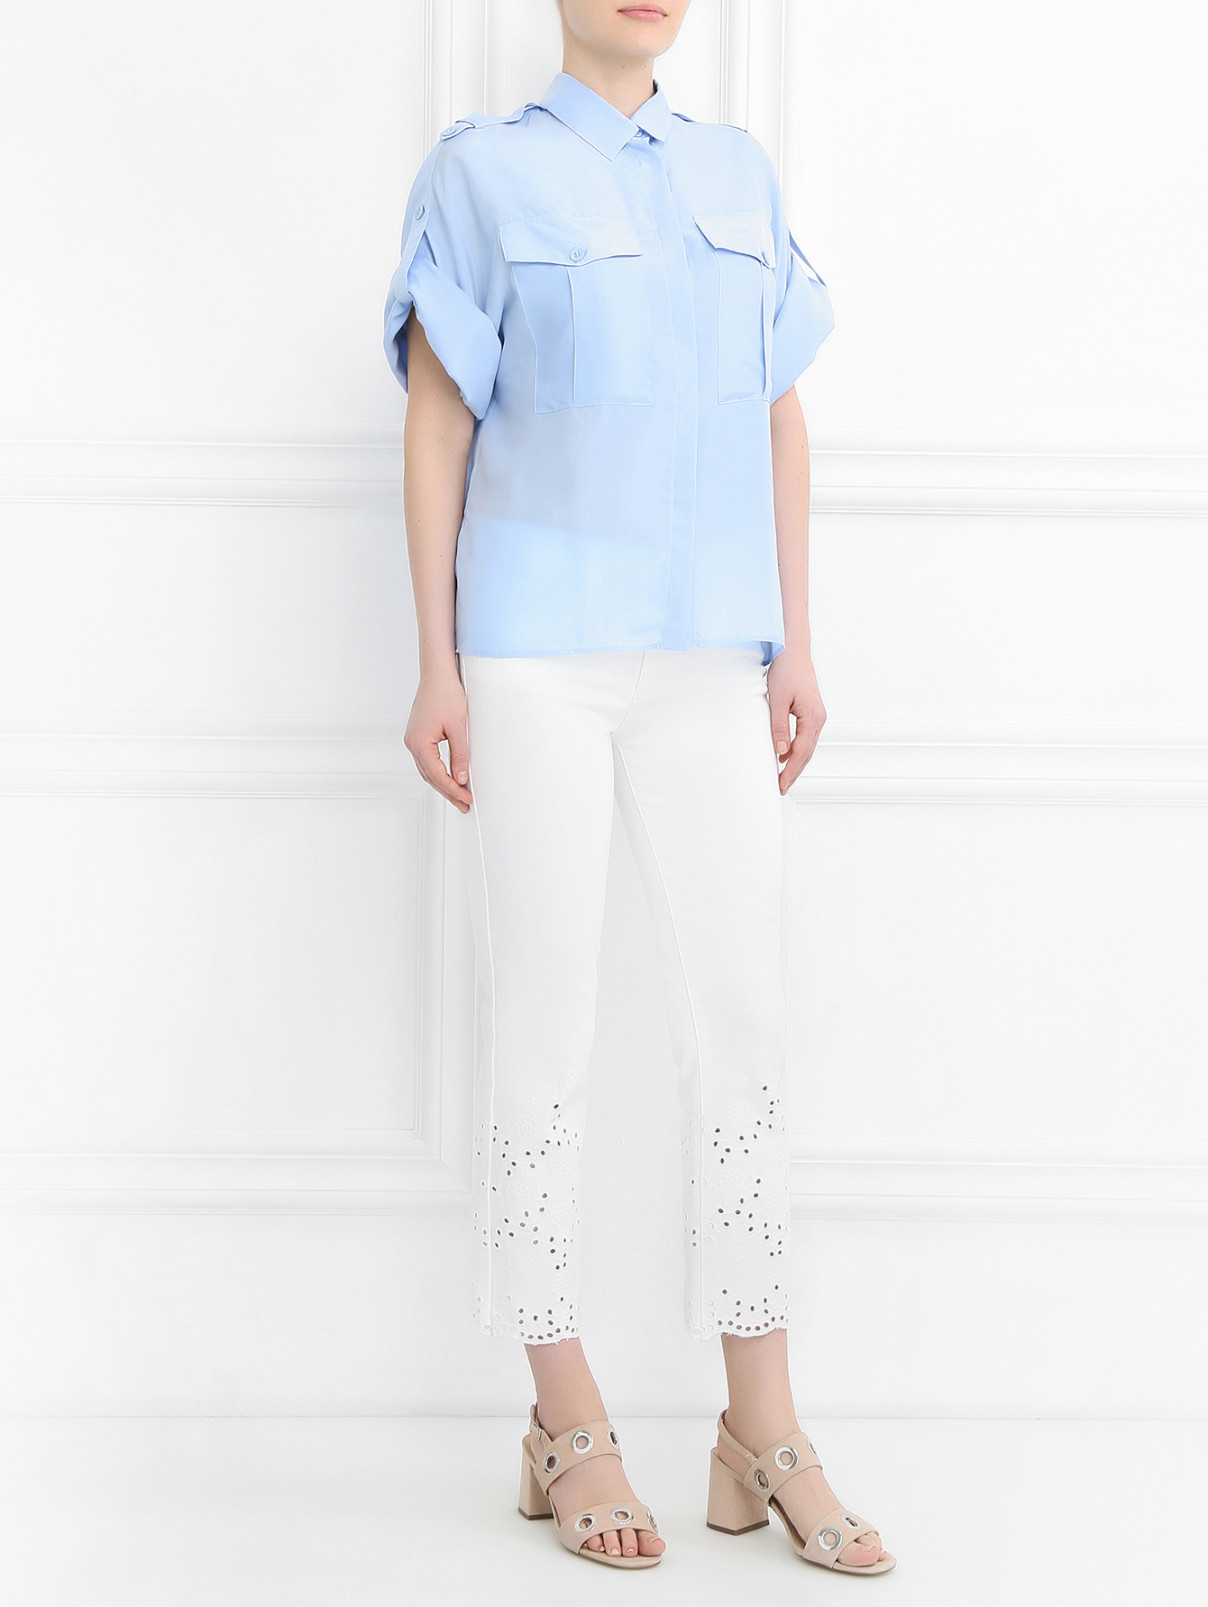 Блуза из шелка свободного кроя с накладными карманами Tara Jarmon  –  Модель Общий вид  – Цвет:  Синий